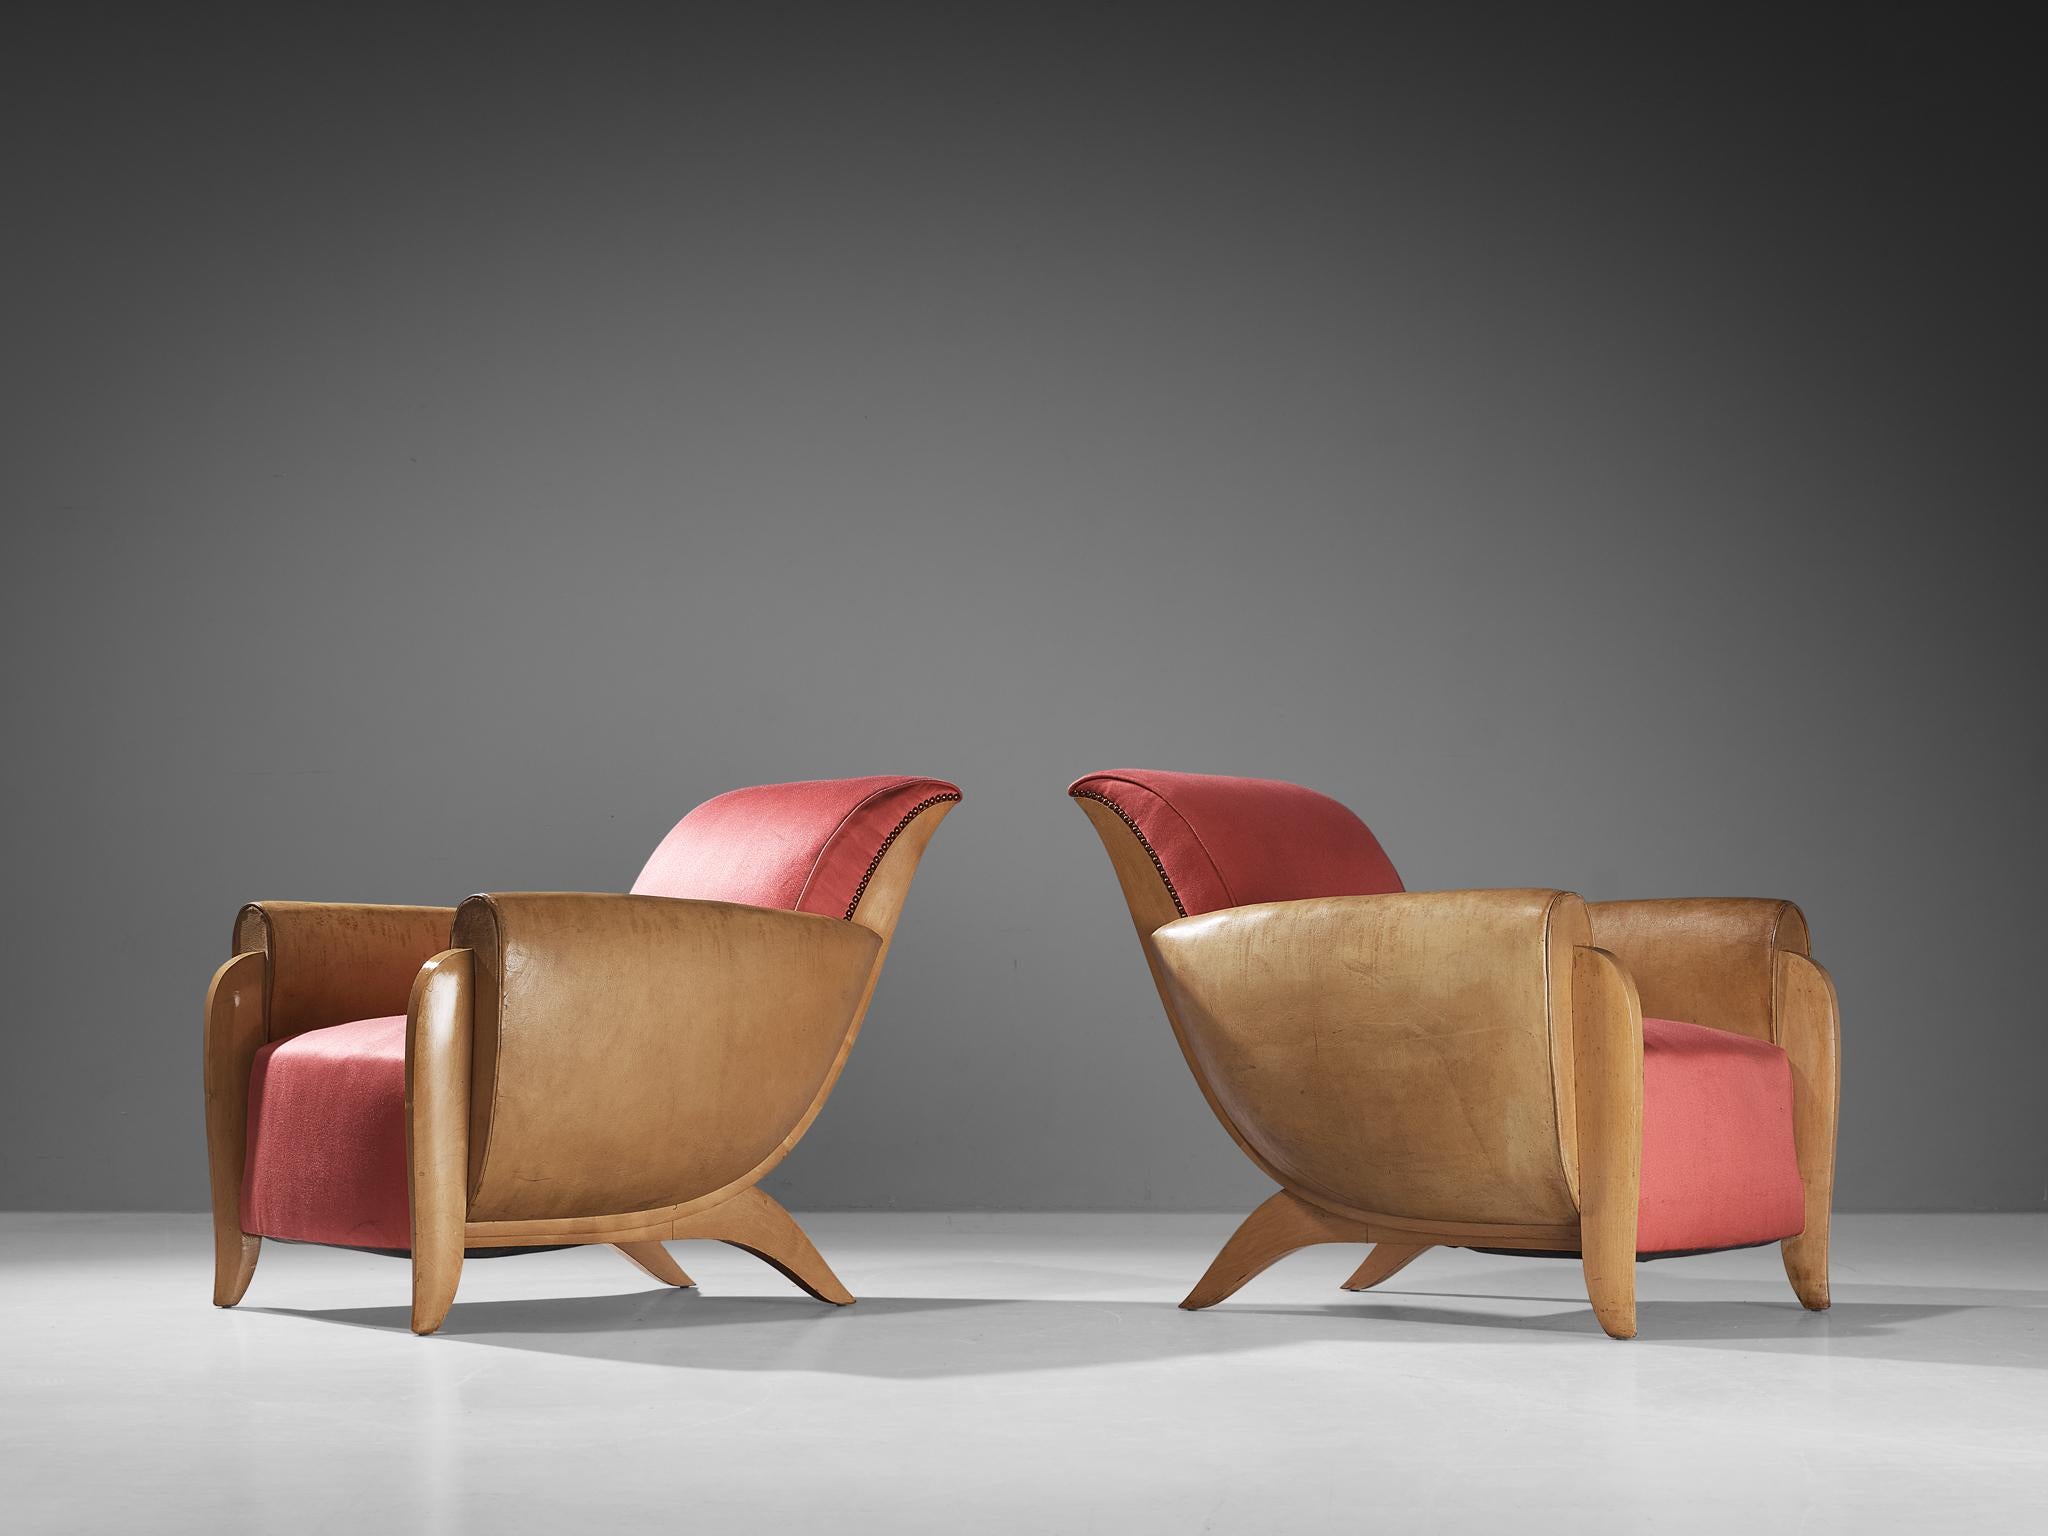 Paire de fauteuils, soie, cuir, laiton, bouleau, France, vers 1930.

Ces chaises longues magnifiquement conçues ont été créées au cours de l'une des périodes les plus influentes pour les arts, à savoir le mouvement Art déco. Ces rares chaises de